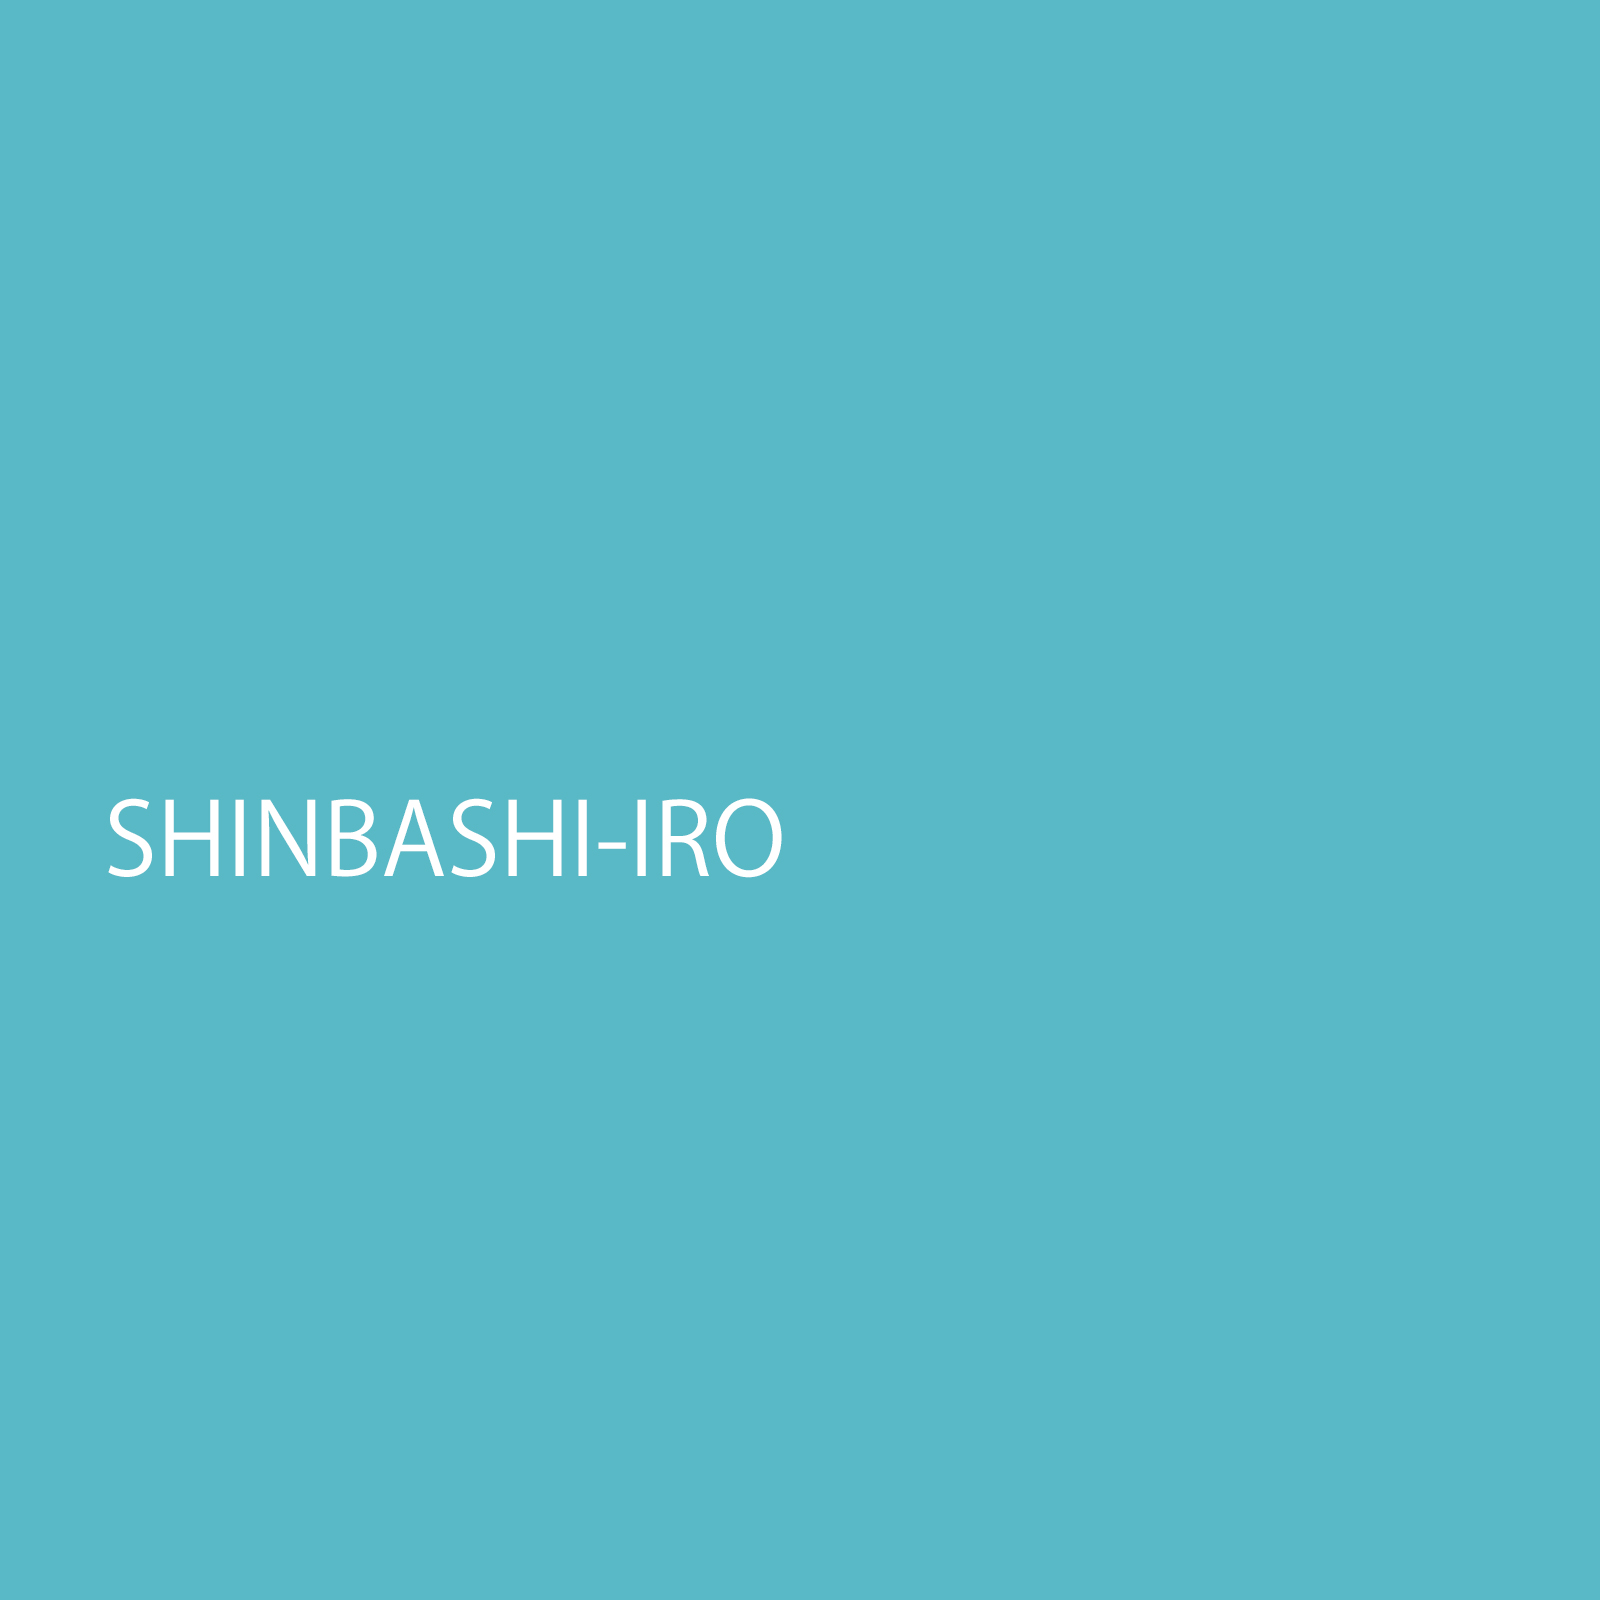 shinbashiiro.jpg